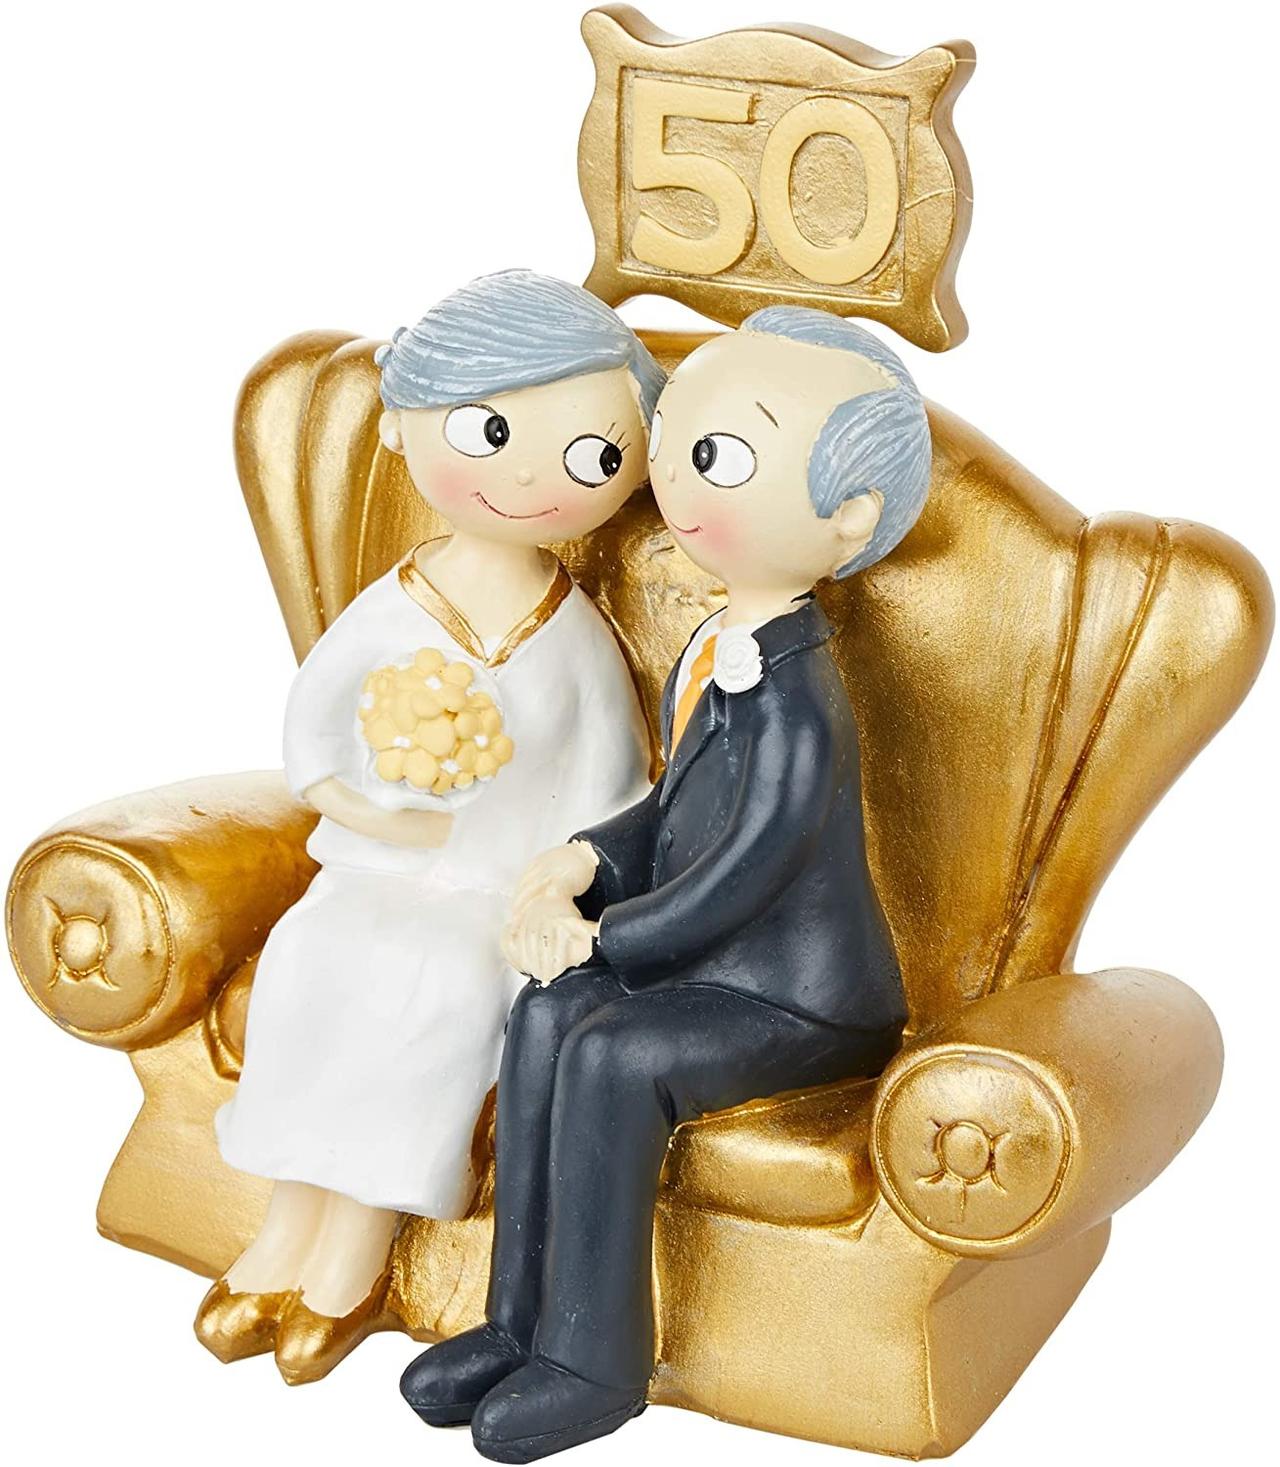 Ecco i regali per le nozze d'oro, idee regalo per i 50 anni di matrimonio.  Delle idee regalo per le nozze d'oro classiche, origina…